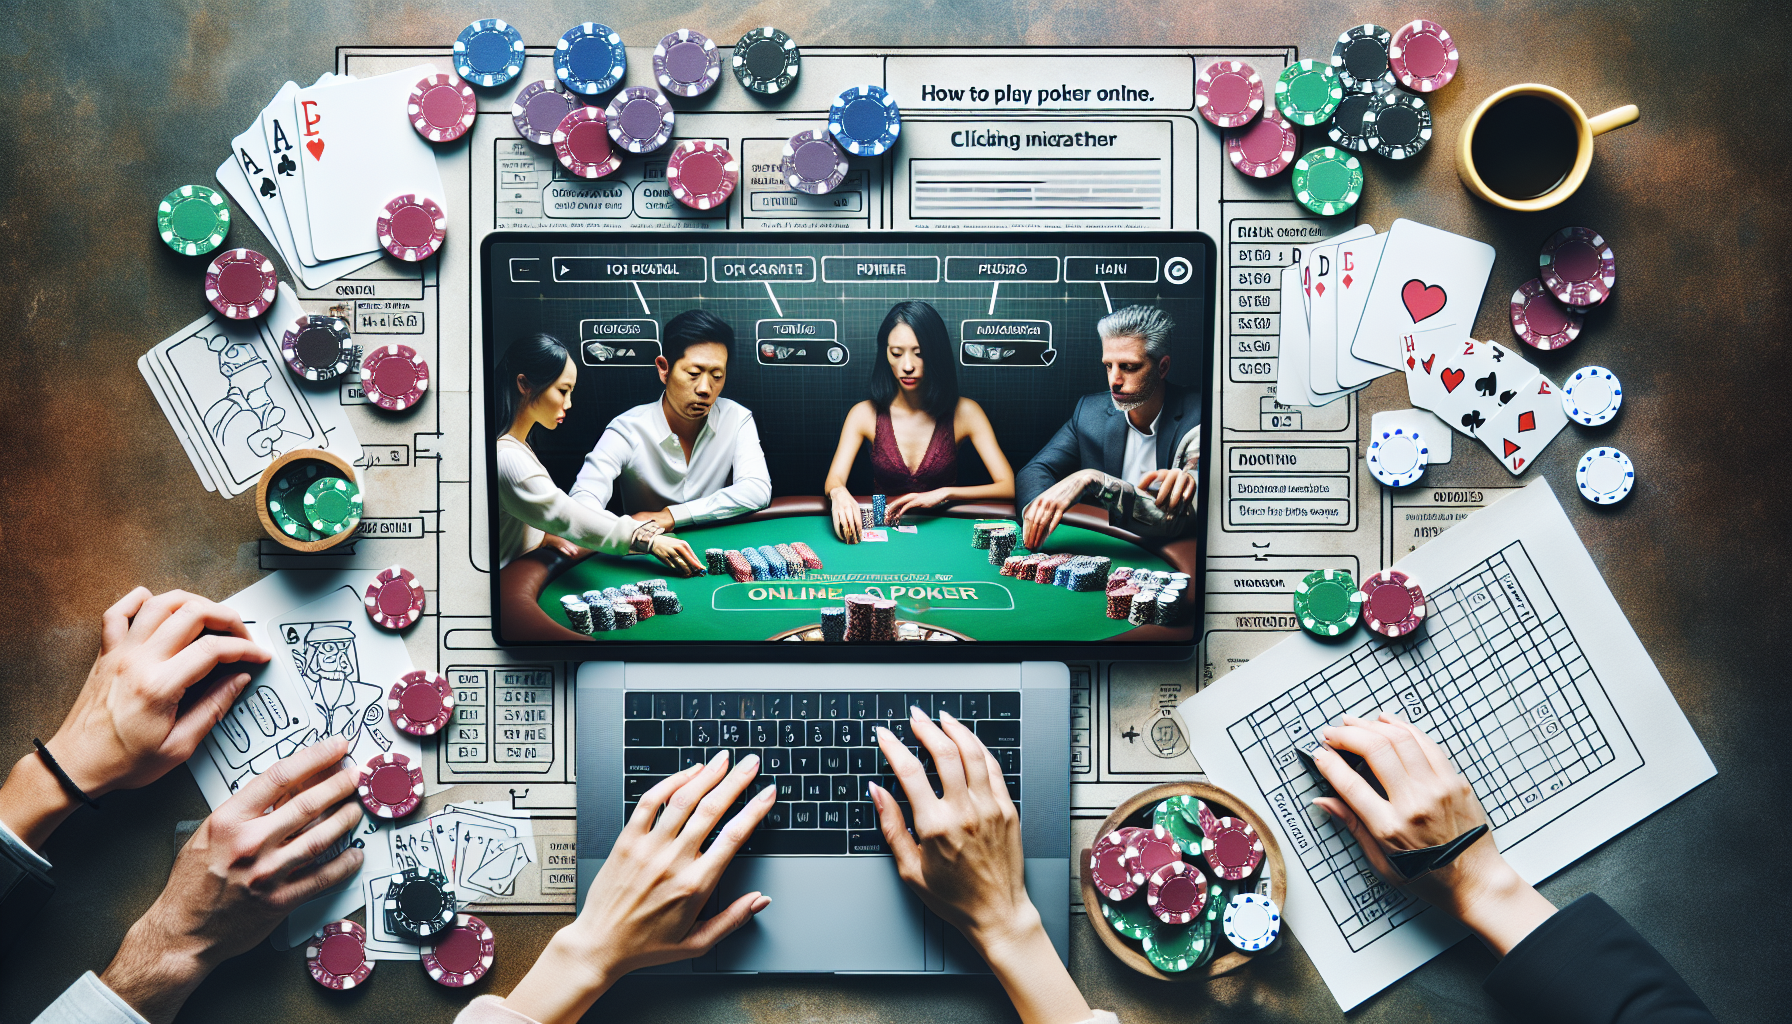 découvrez comment jouer au poker en ligne et apprenez les règles et les stratégies du jeu de poker sur internet.